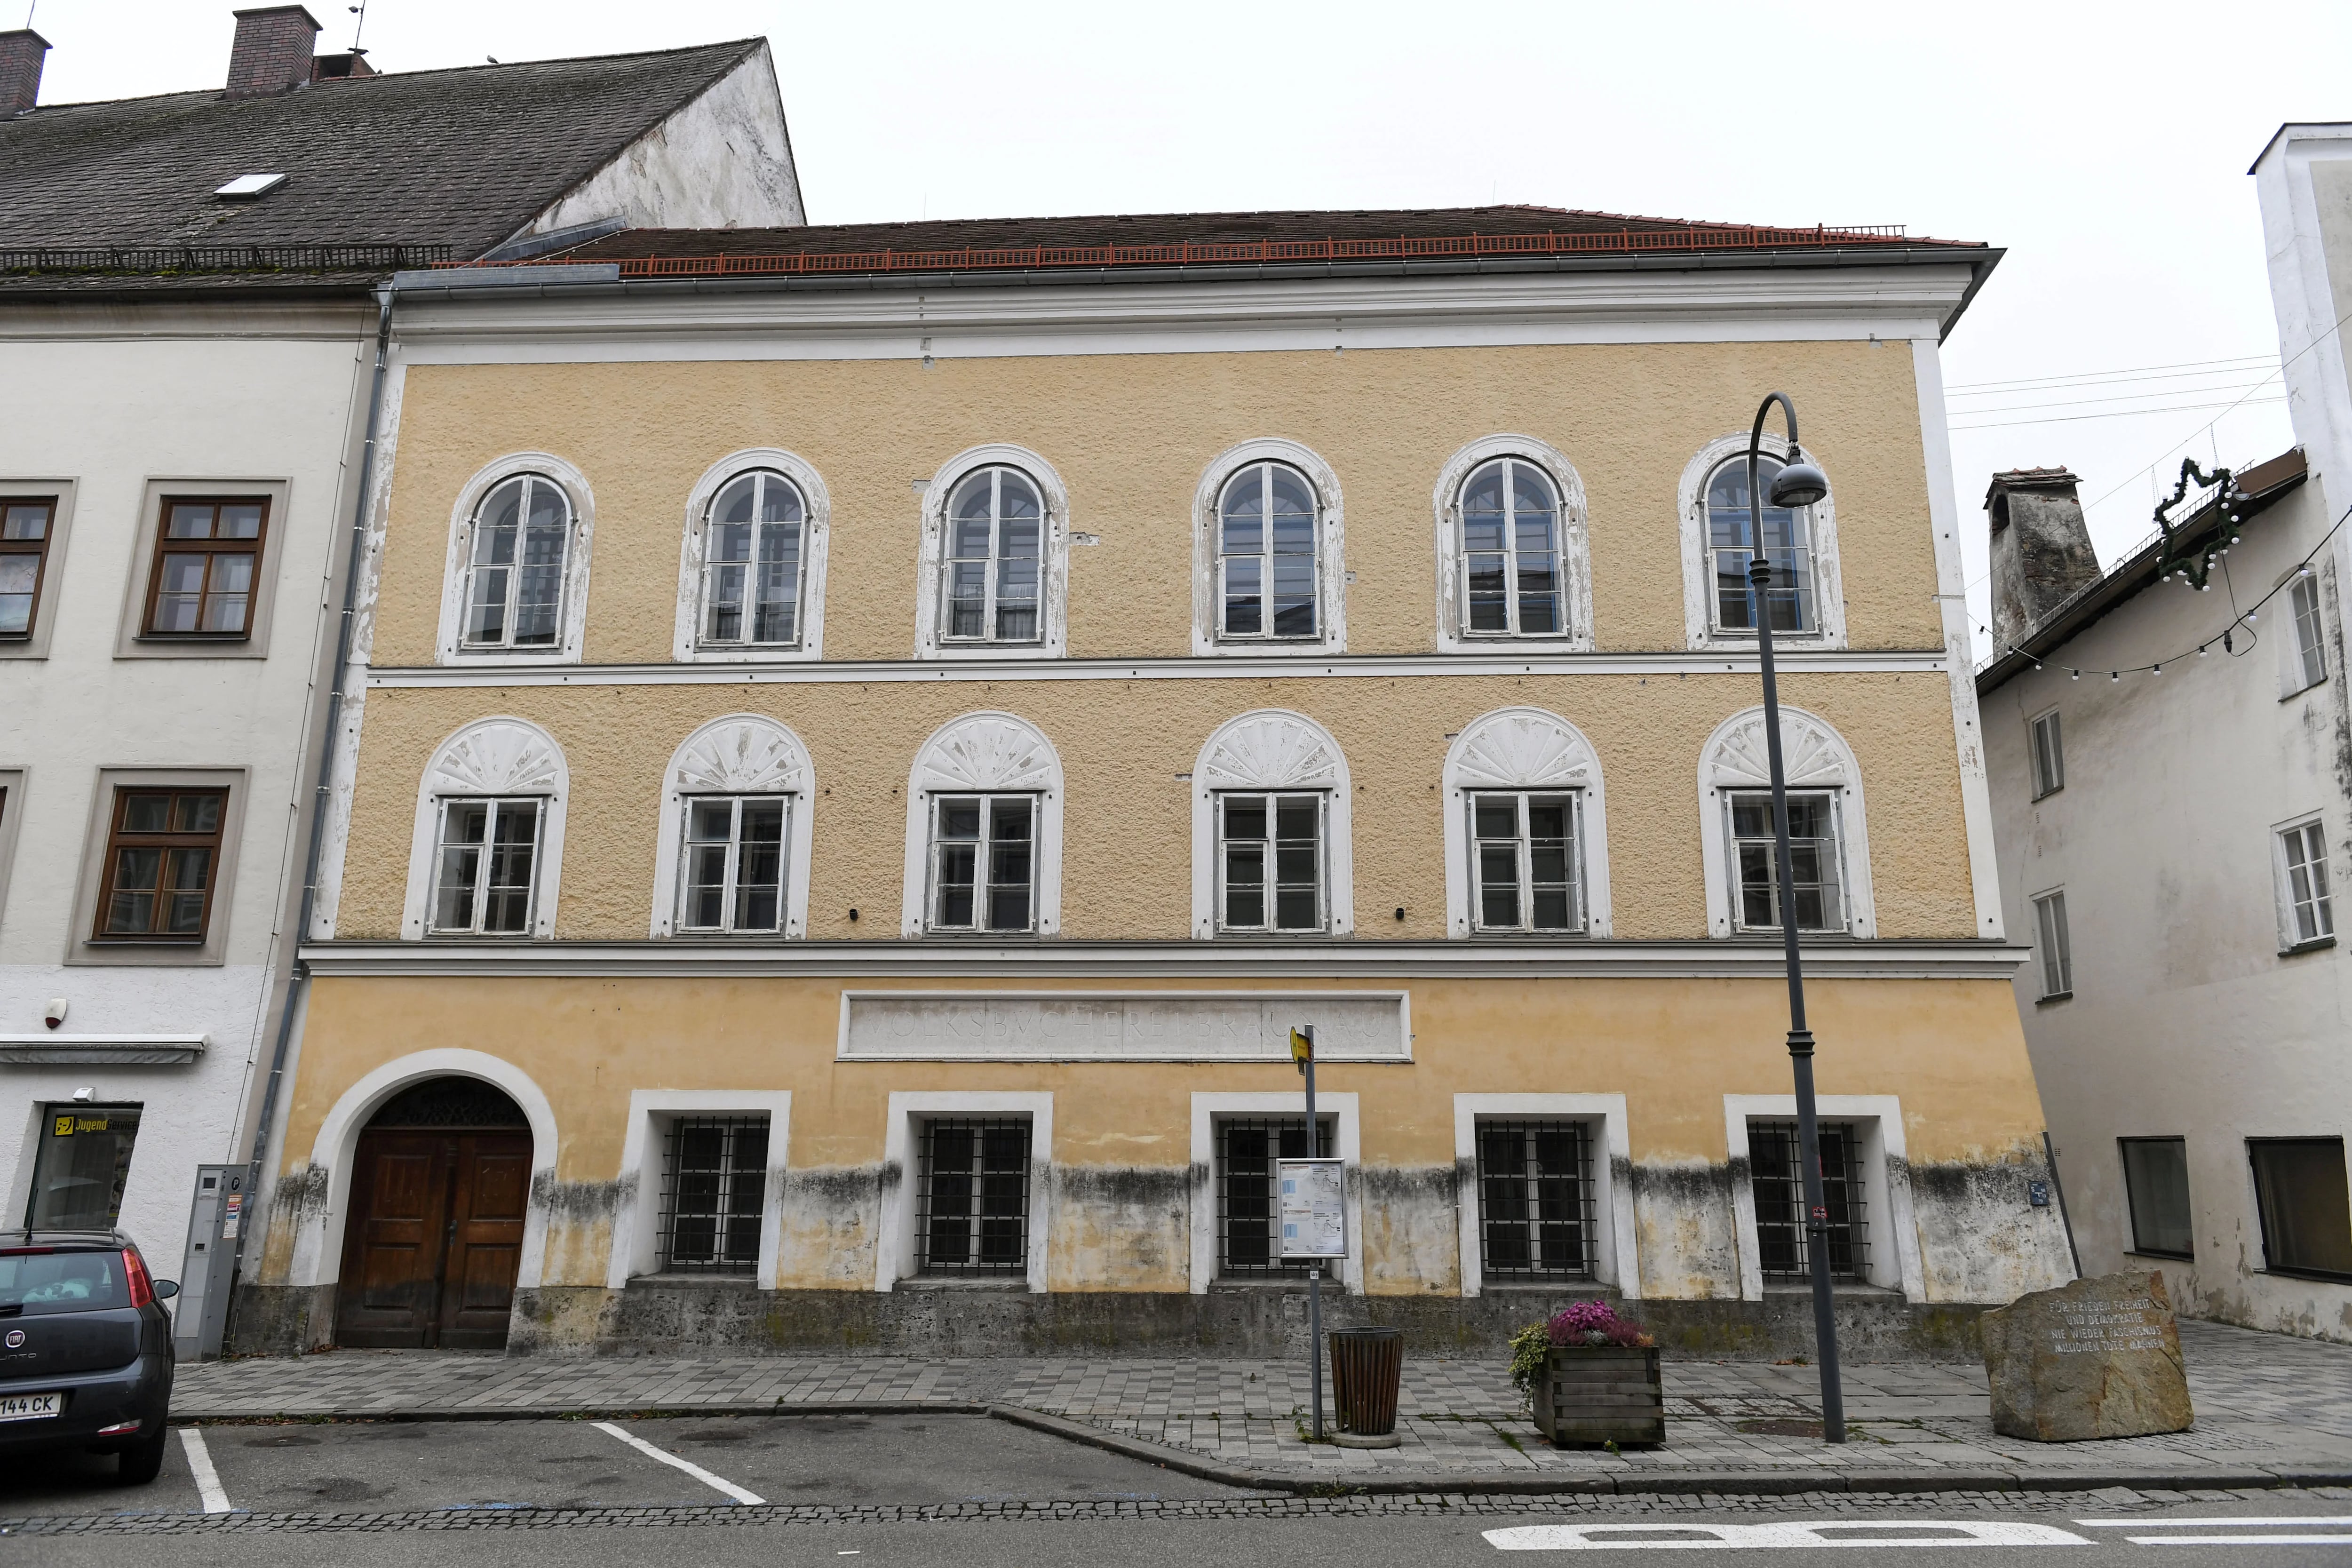 Vista general del edificio donde nació el genocida Adolf Hitler en Braunau, Austria (REUTERS/Andreas Gebert)